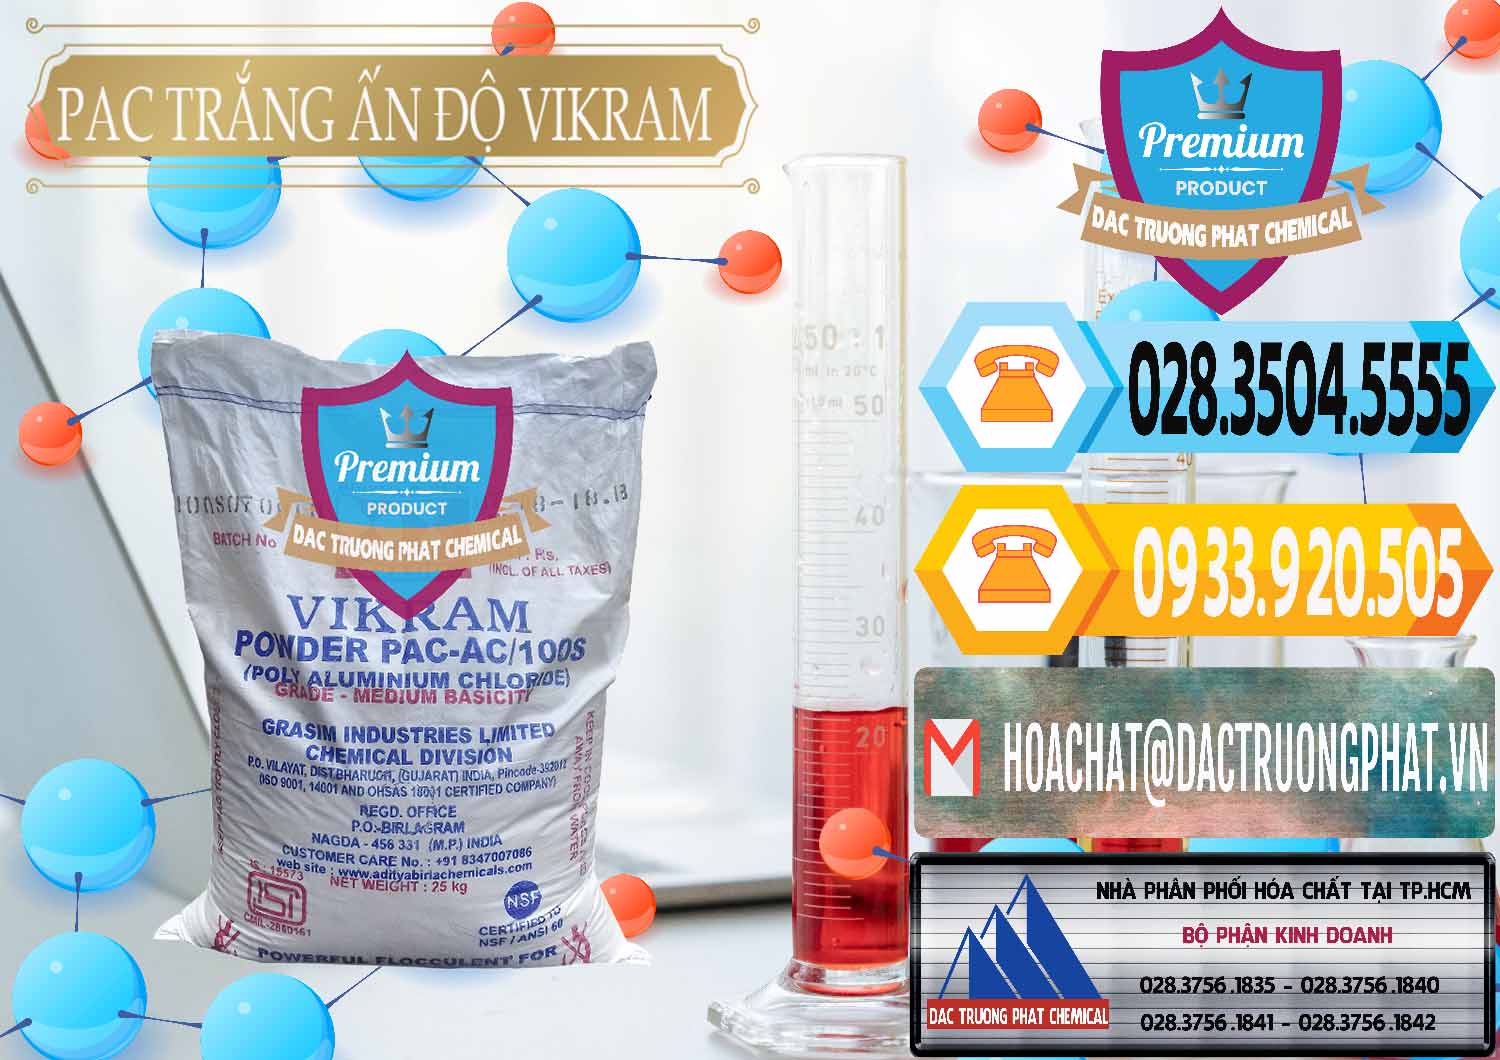 Công ty nhập khẩu & bán PAC - Polyaluminium Chloride Ấn Độ India Vikram - 0120 - Công ty chuyên phân phối - cung ứng hóa chất tại TP.HCM - hoachattayrua.net